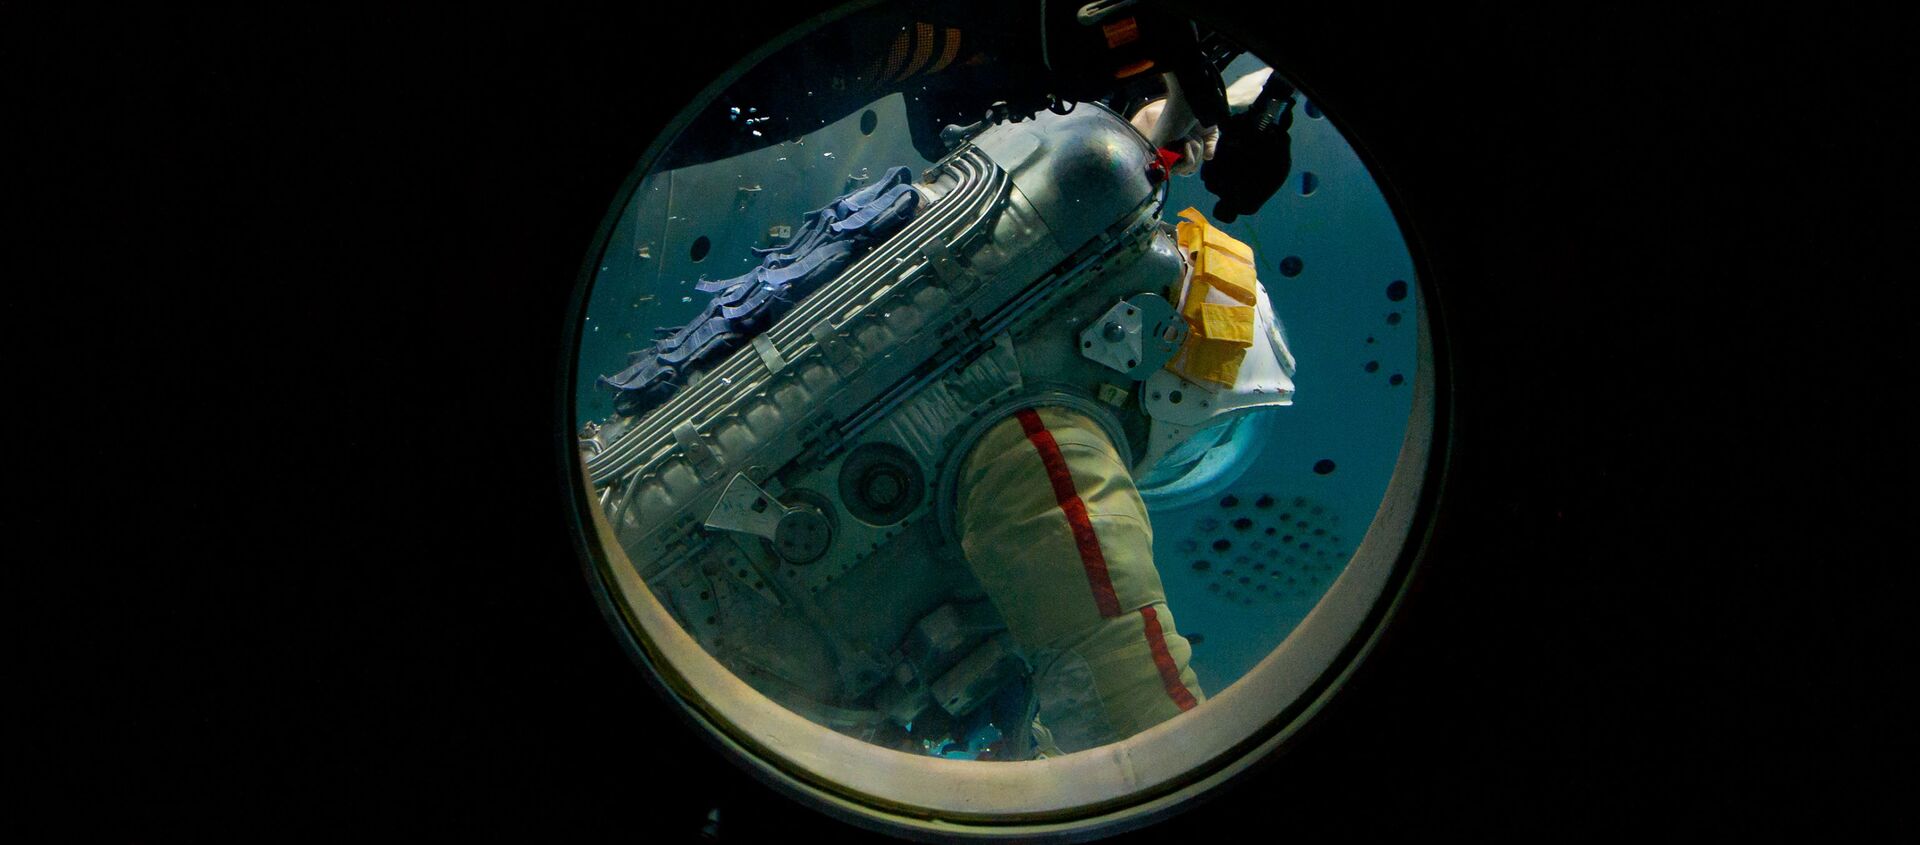 El cosmonauta de Roscosmos Oleg Artémiev durante el entrenamiento de una caminata espacial en el hidrolaboratorio del Centro de Entrenamiento de Cosmonautas Yuri Gagarin (archivo) - Sputnik Mundo, 1920, 09.07.2020